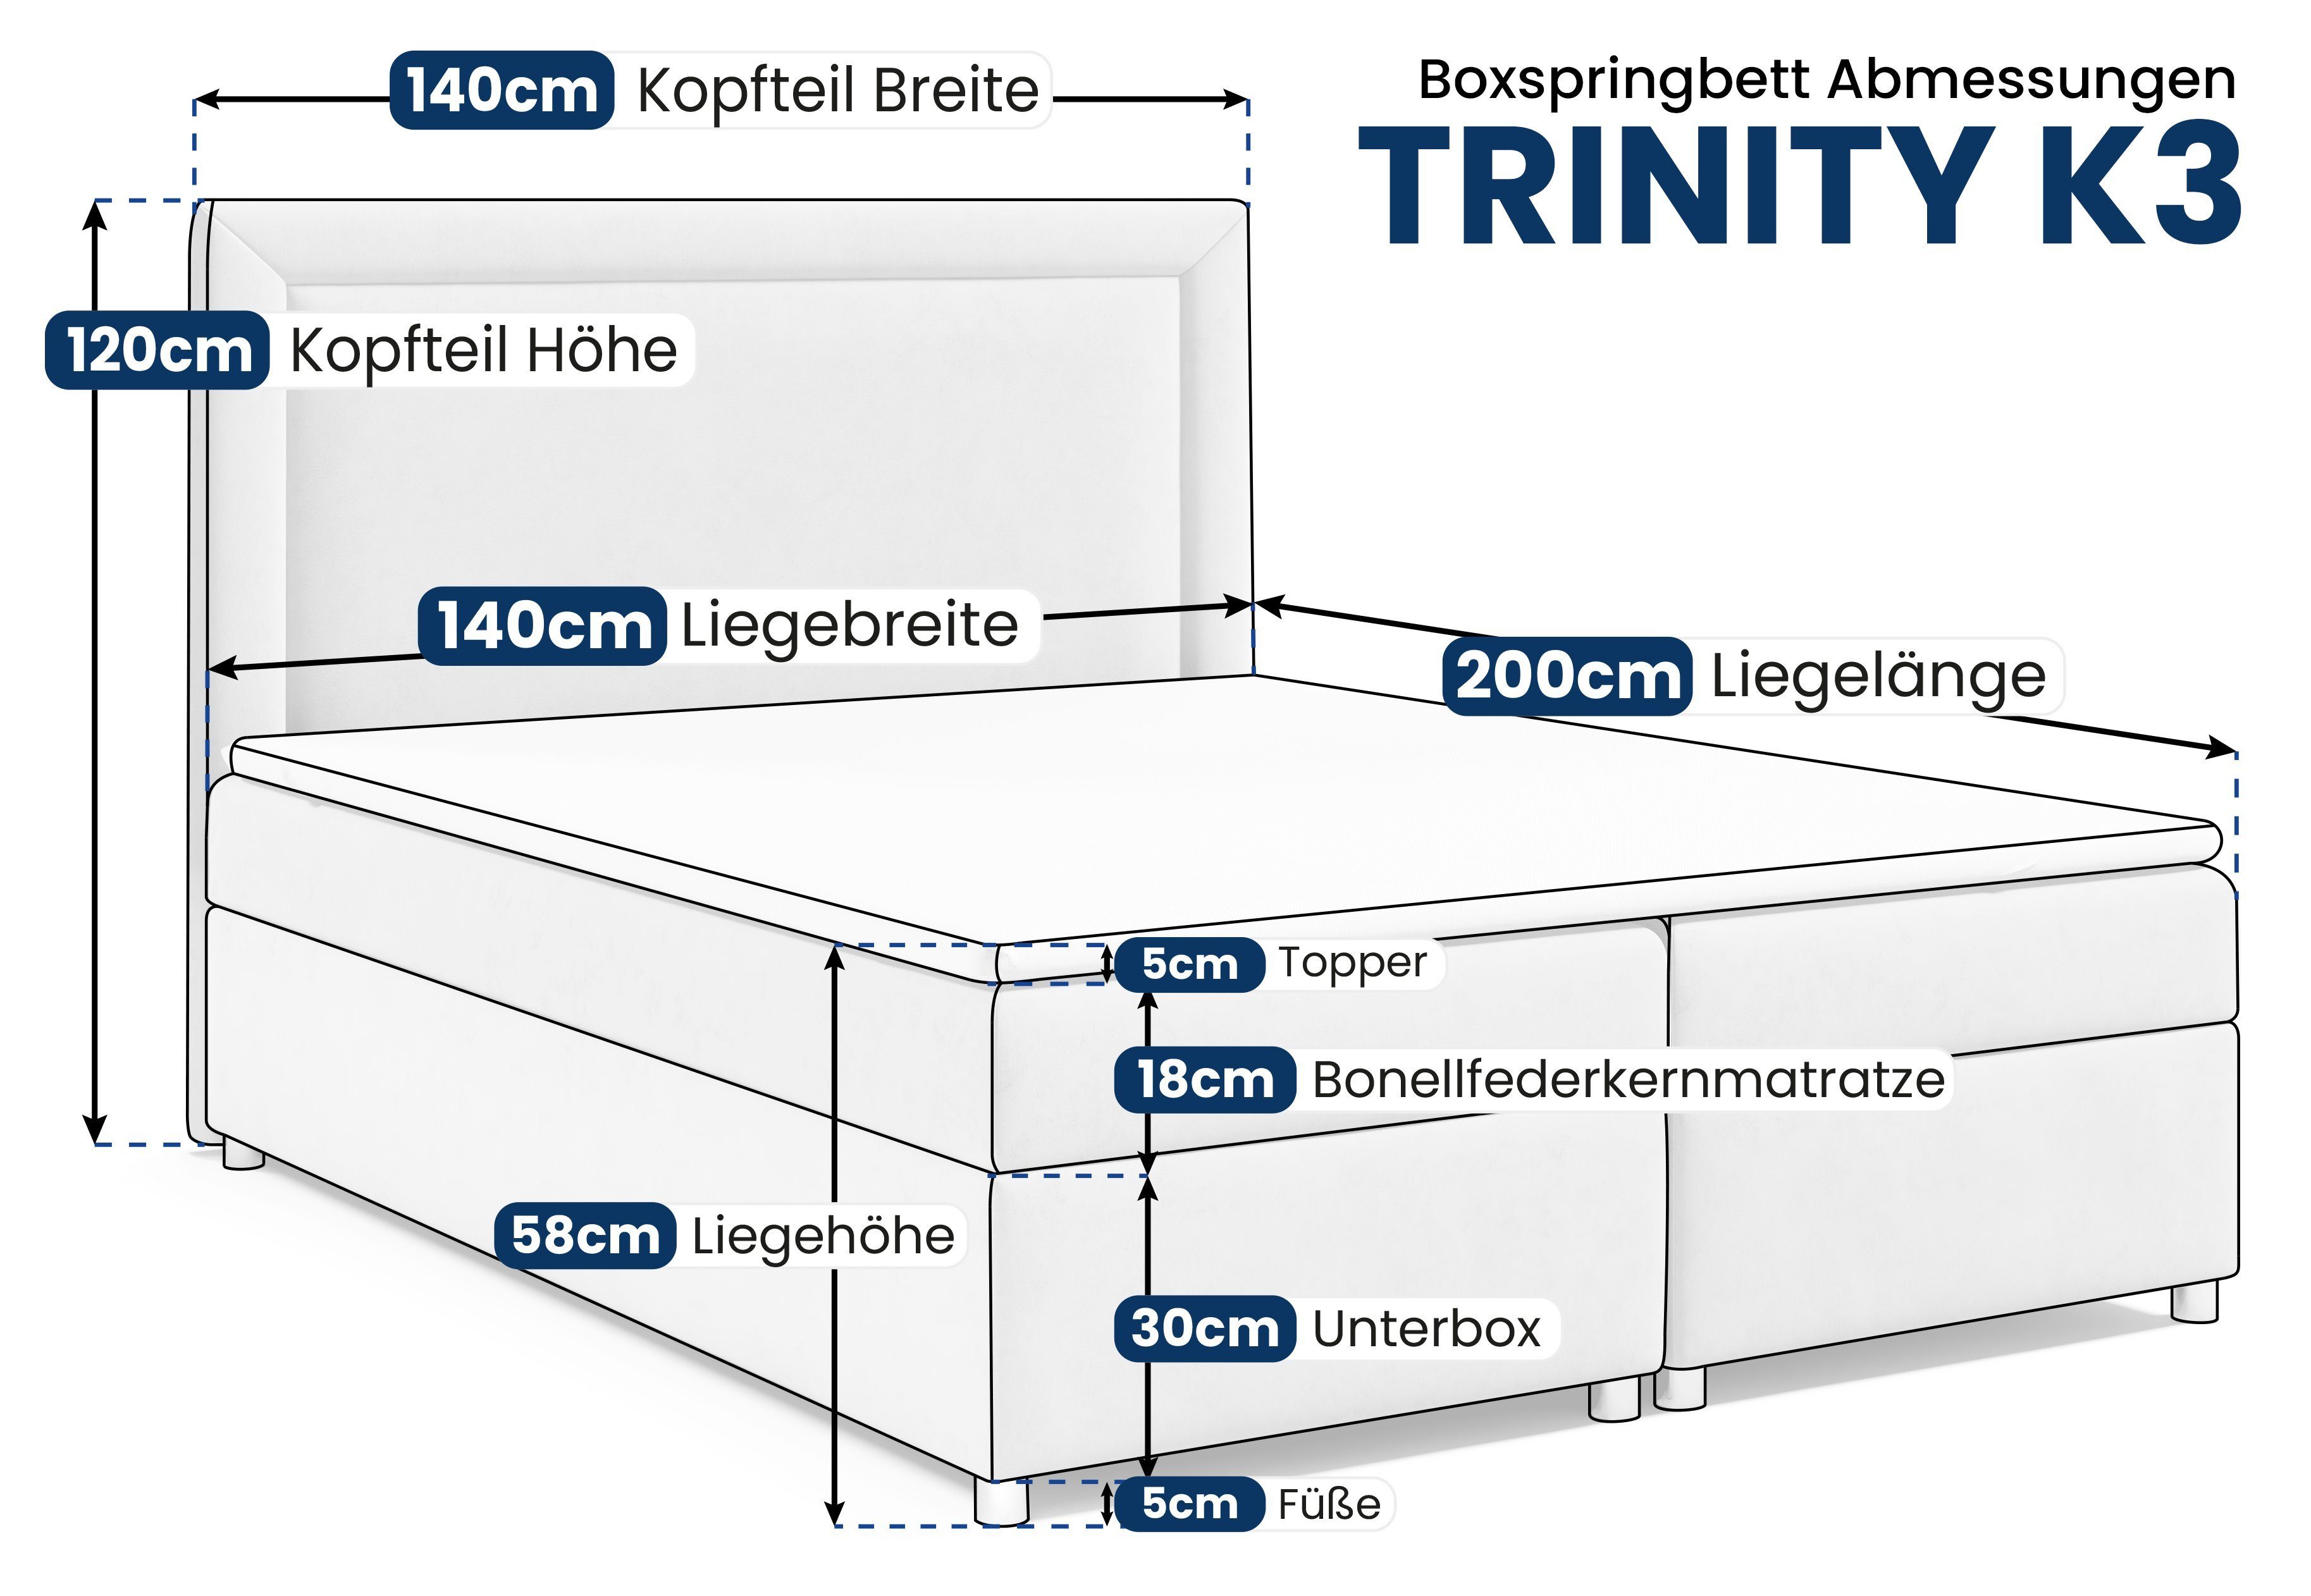 Best Home Boxspringbett mit Trinity Beige K3, Bettkasten for Topper und